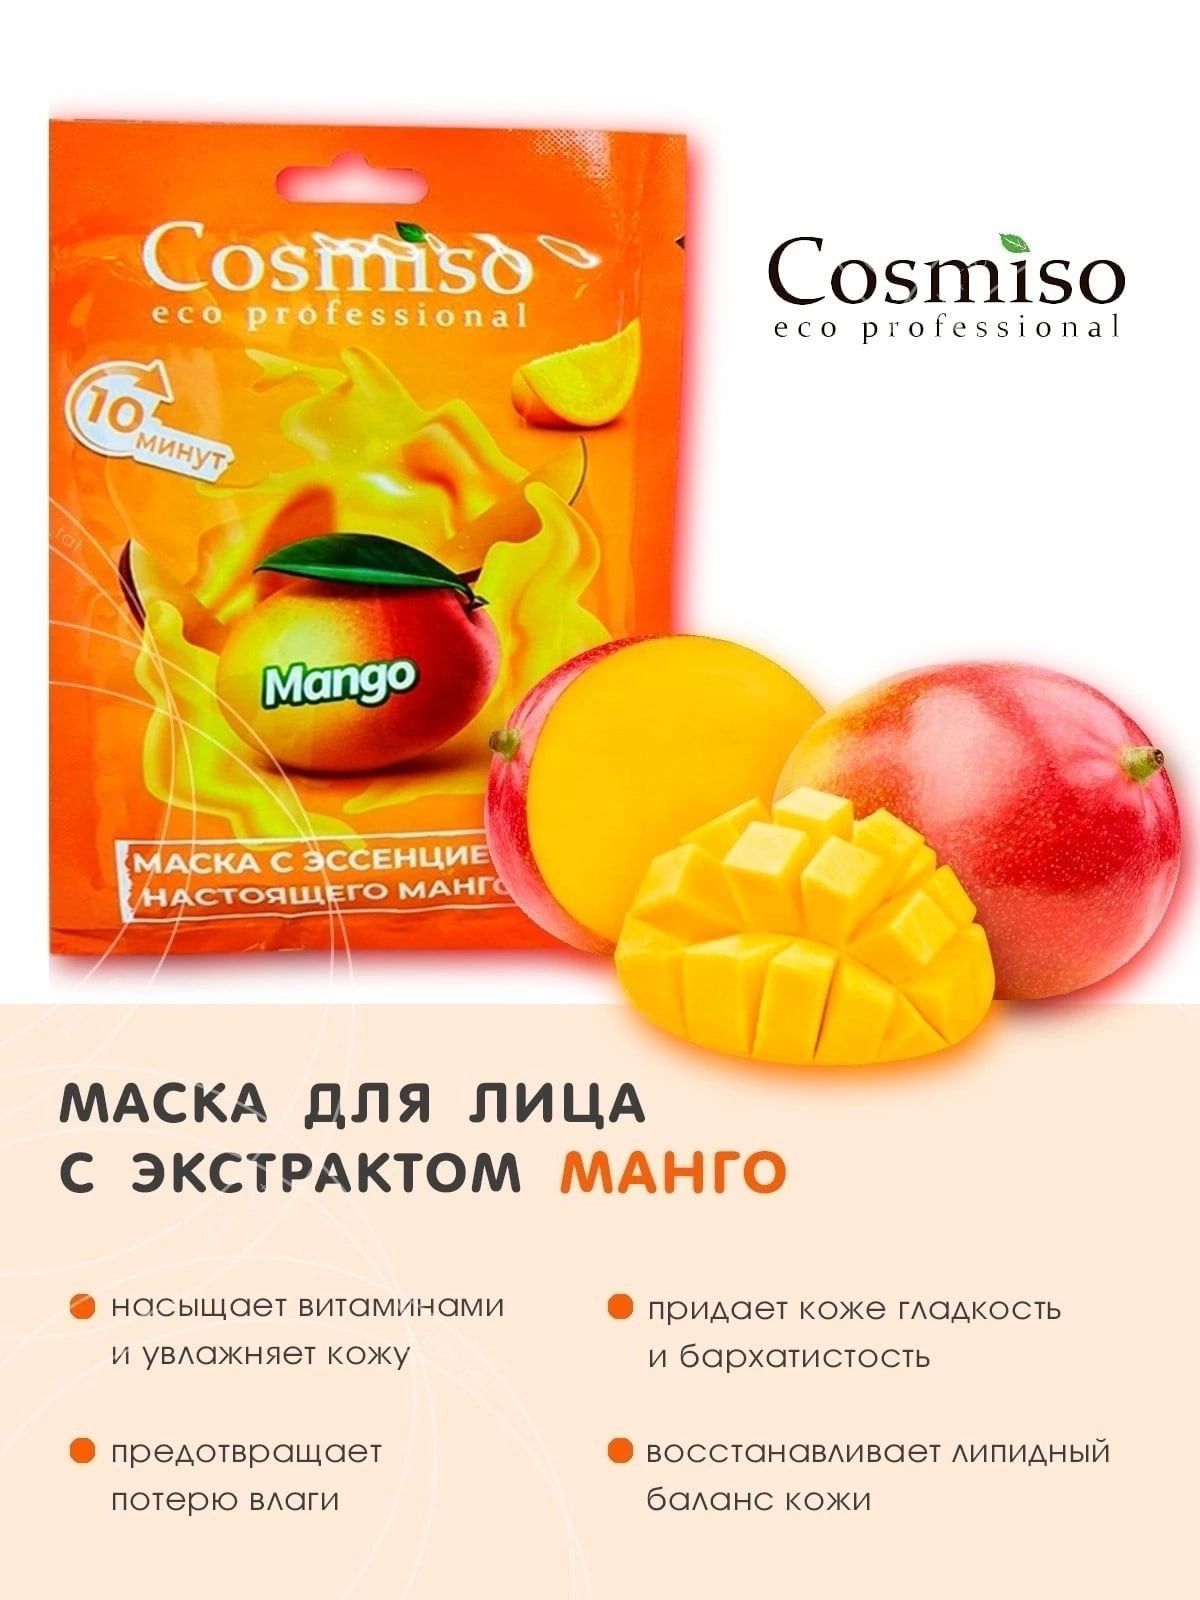 Cosmiso eco professional. Тканевые маски cosmiso. Cosmiso маска для лица. Cosmiso Eco professional маска для лица. Cosmiso Eco professional капсулы.